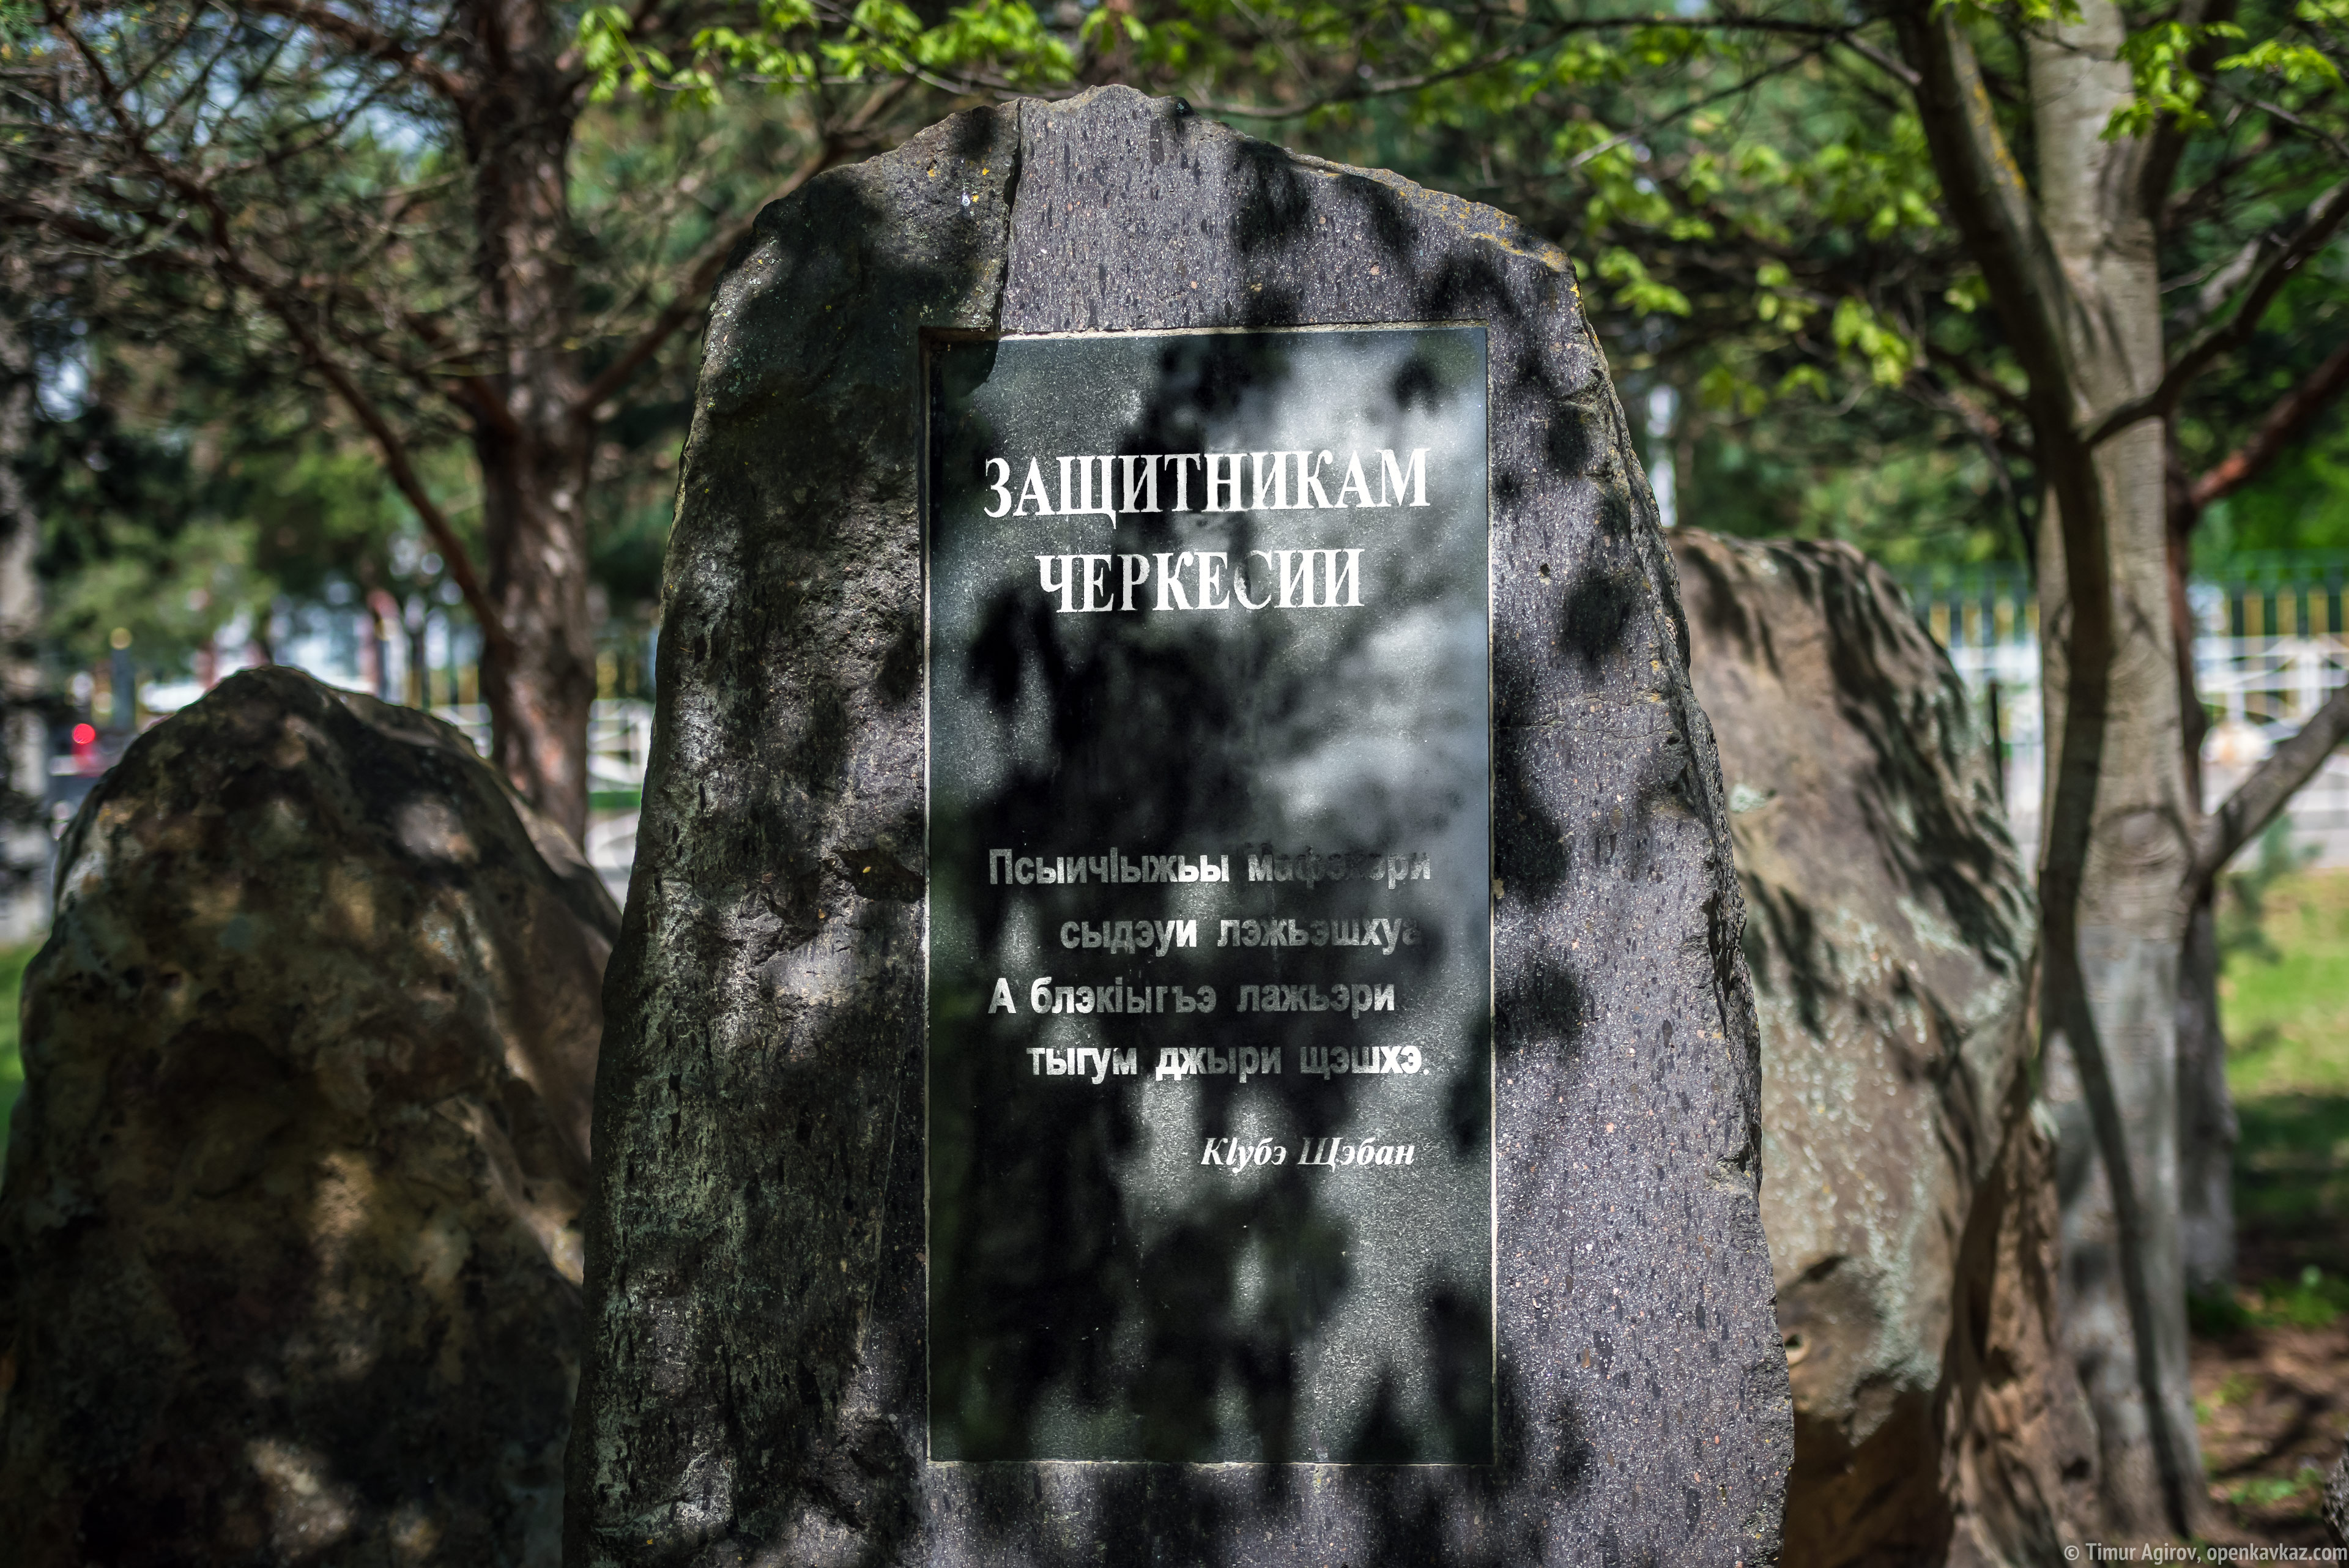 Мемориал "Защитникам Черкесии" в ауле Тахтамукай, Адыгея, Ингушетия